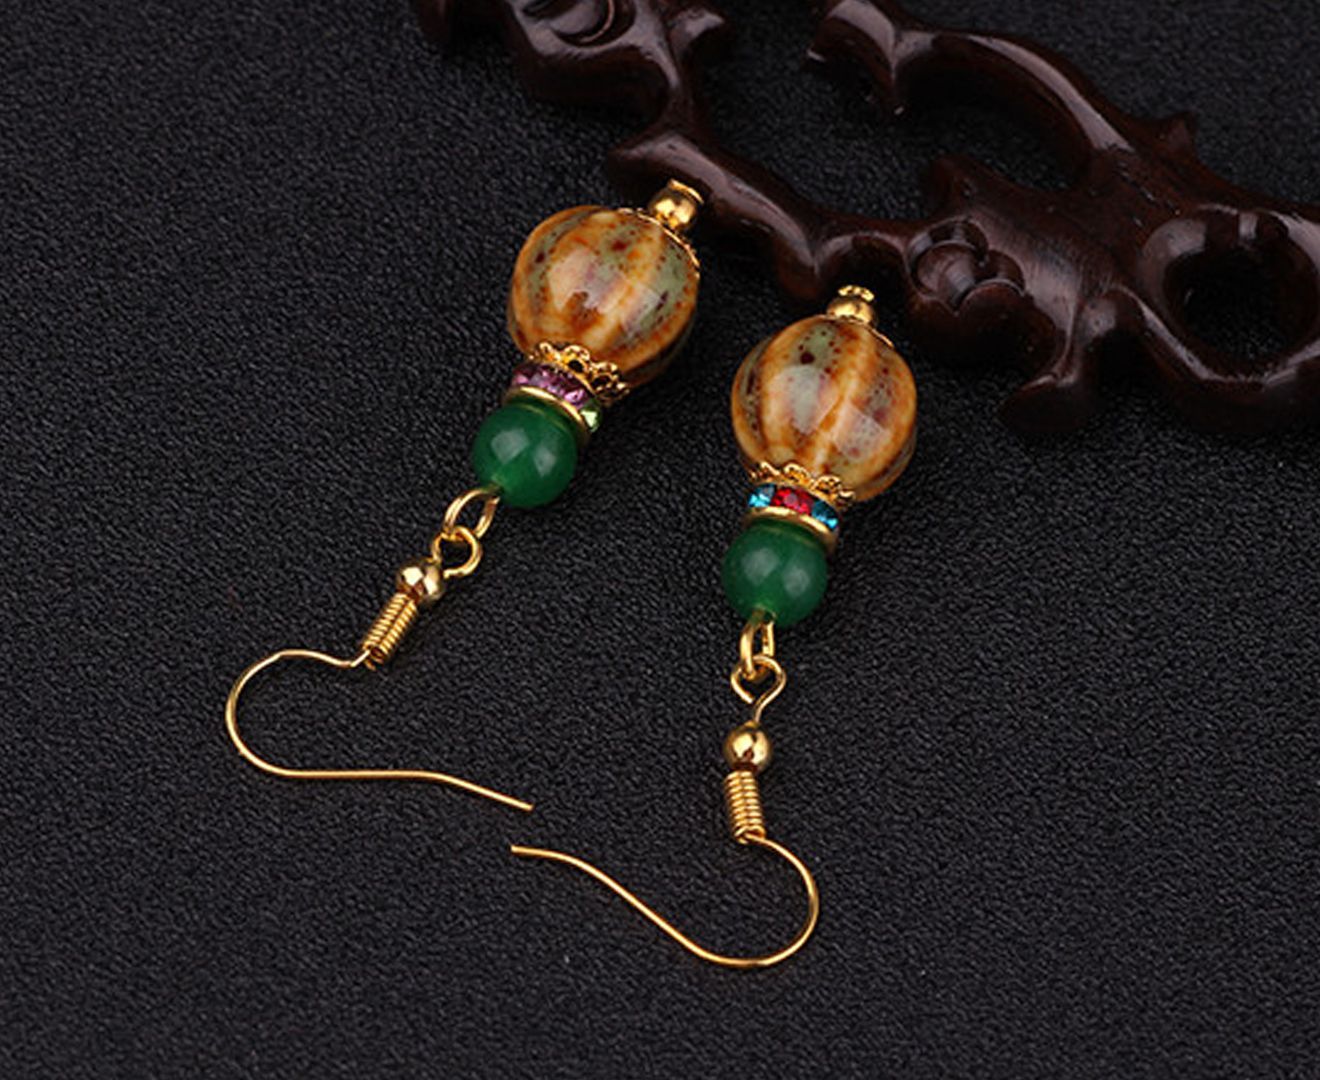 Ceramic Bead and Gemstone Encrusted Drop Earrings